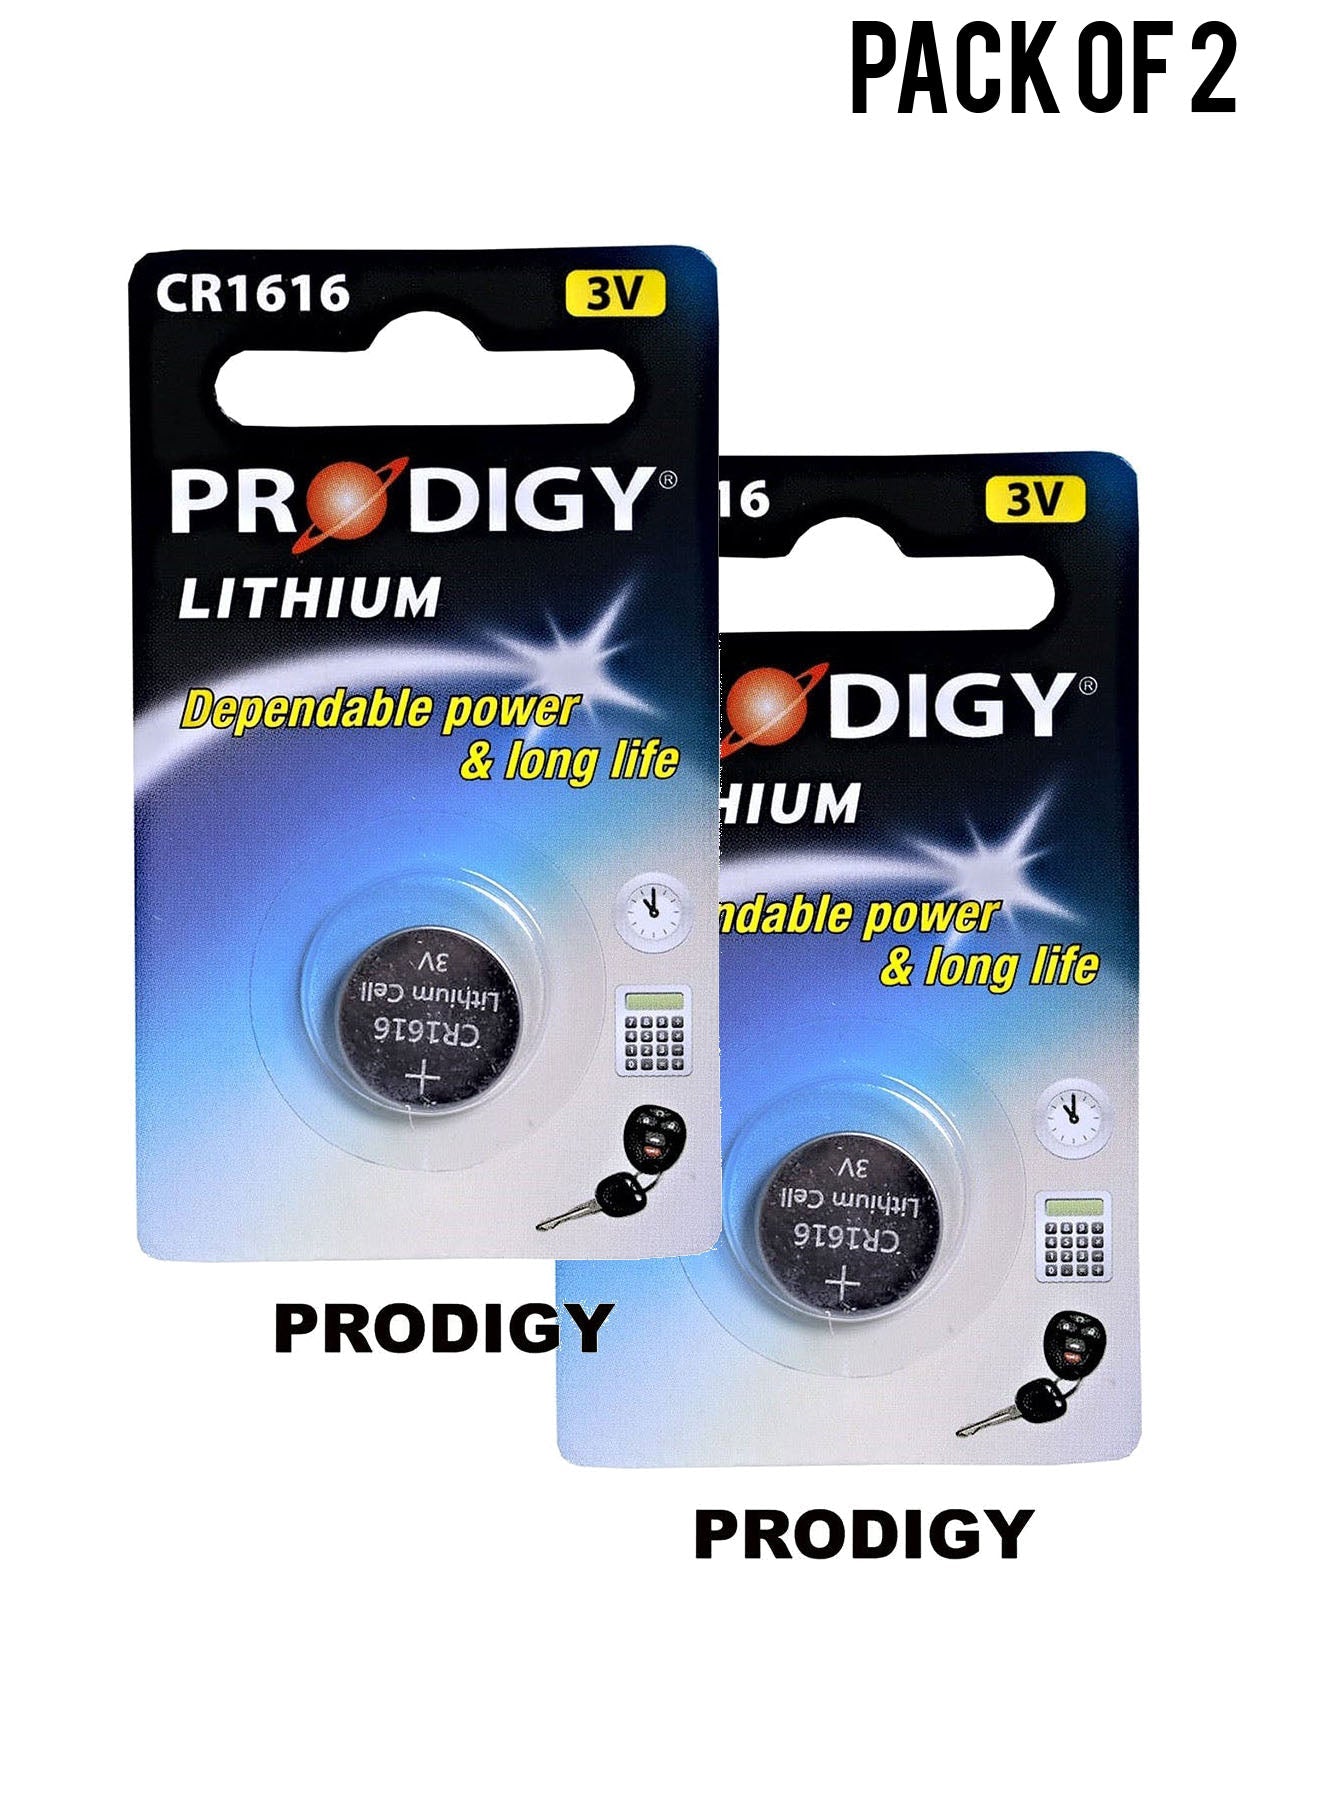 Prodigy Lithium CR1616 3V Value Pack of 2 